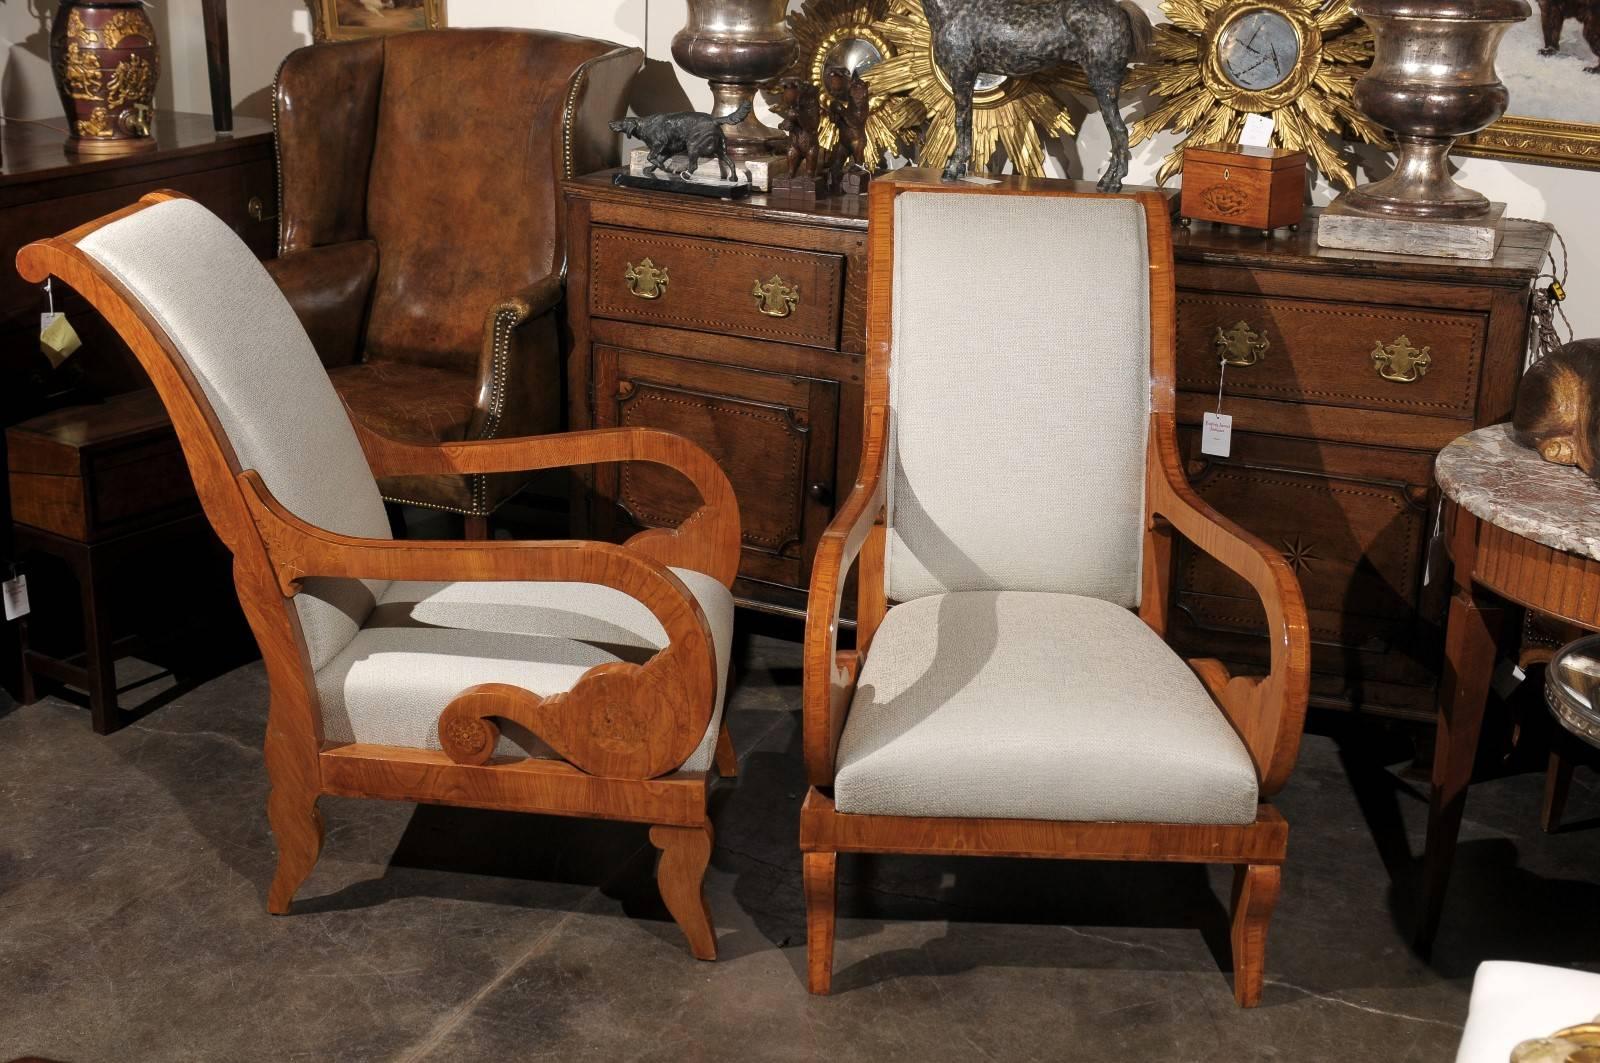 Cette paire de fauteuils Biedermeier tapissés autrichiens du milieu du XIXe siècle présente des dossiers inclinés avec de discrètes volutes dans la traverse supérieure. Les jolis bras sont le point central de l'ensemble, avec leurs exquis supports